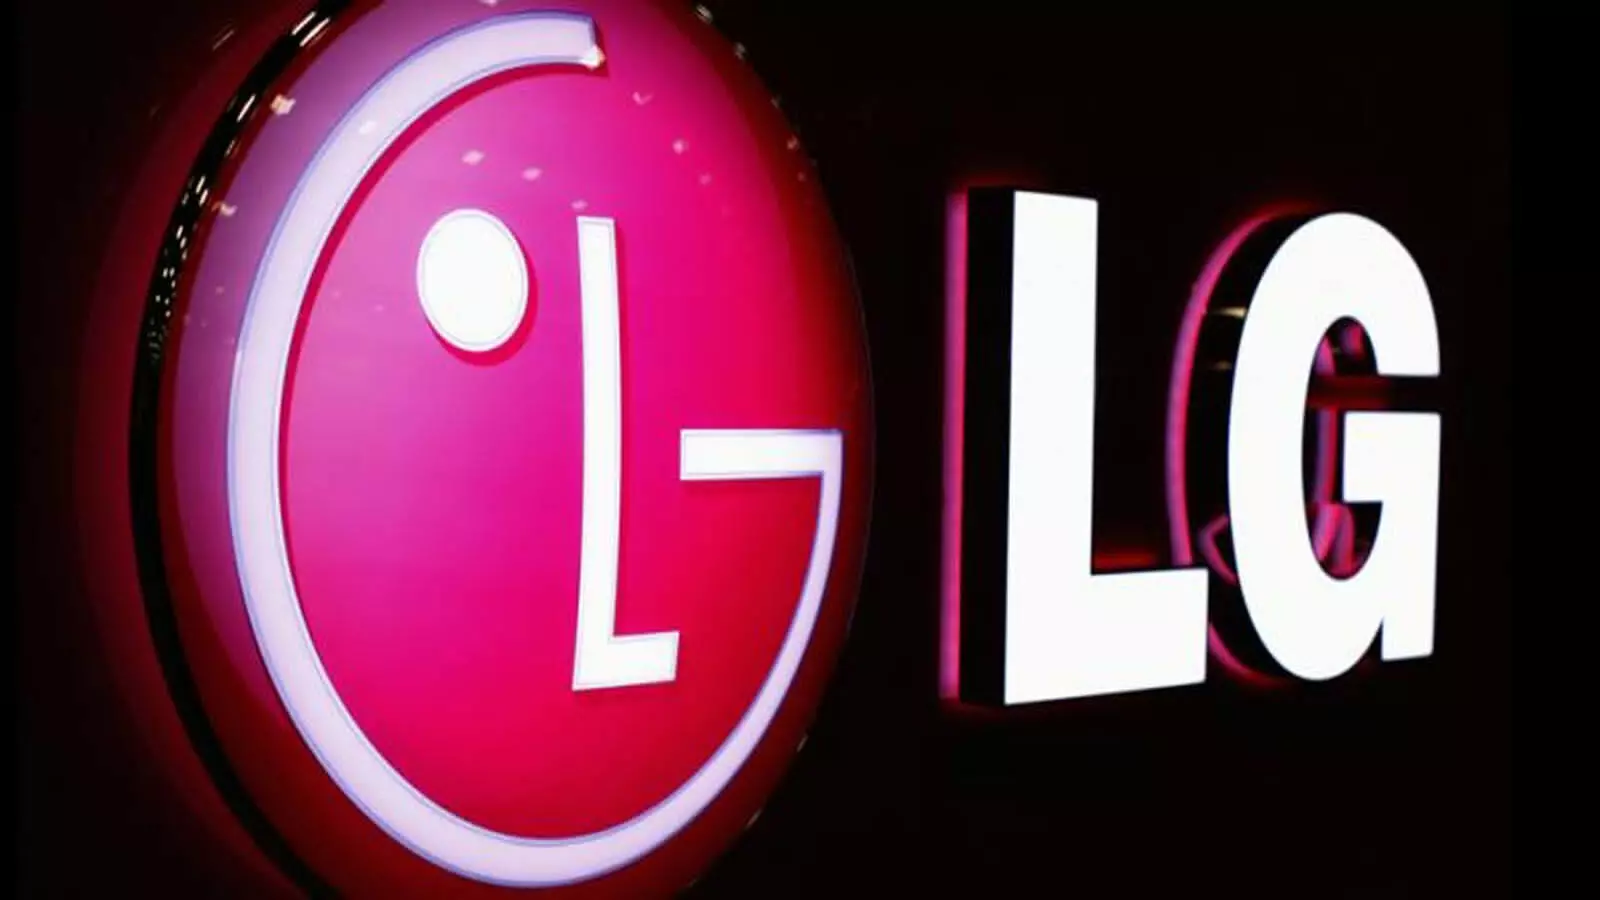 LG स्मार्टफोनः कंपनी ने बंद किया प्रोडक्शन, यूजर्स पर पड़ेगा असर